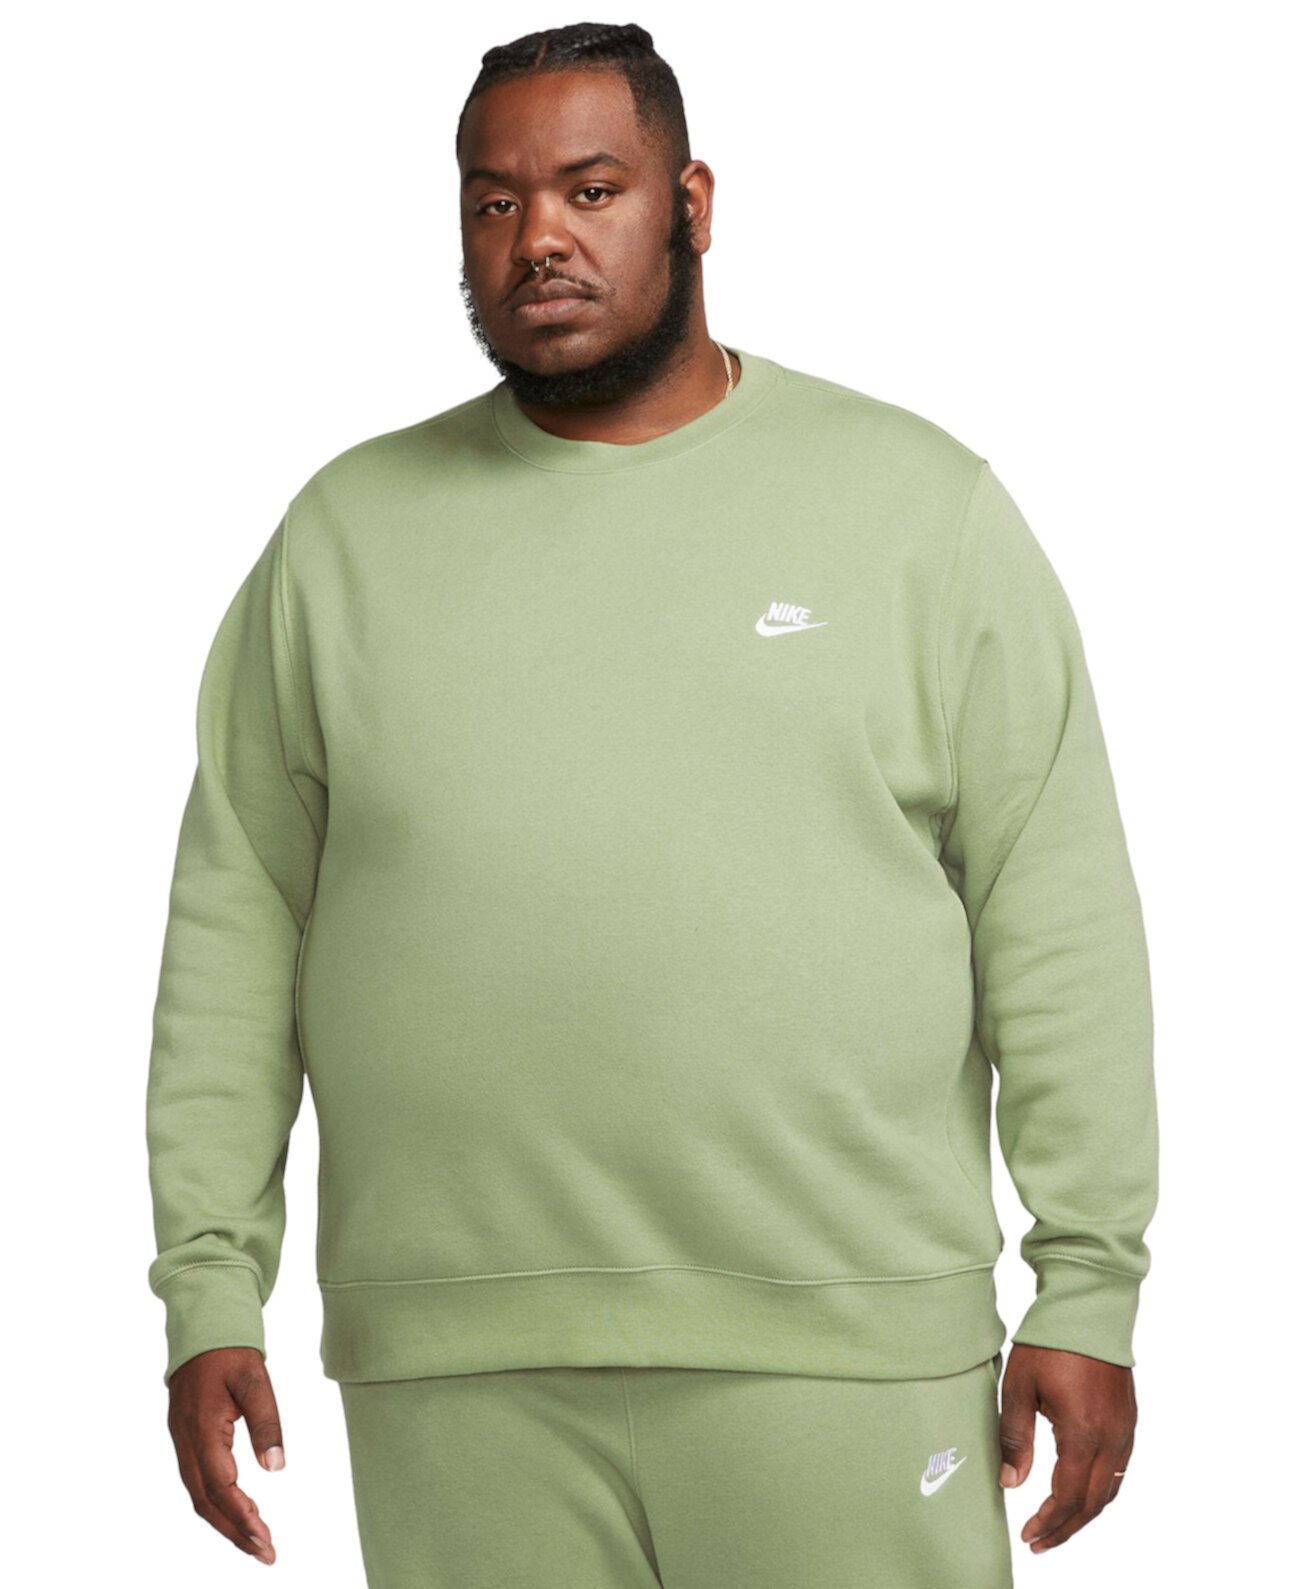 Men's Club Fleece Crew Sweatshirt Nike